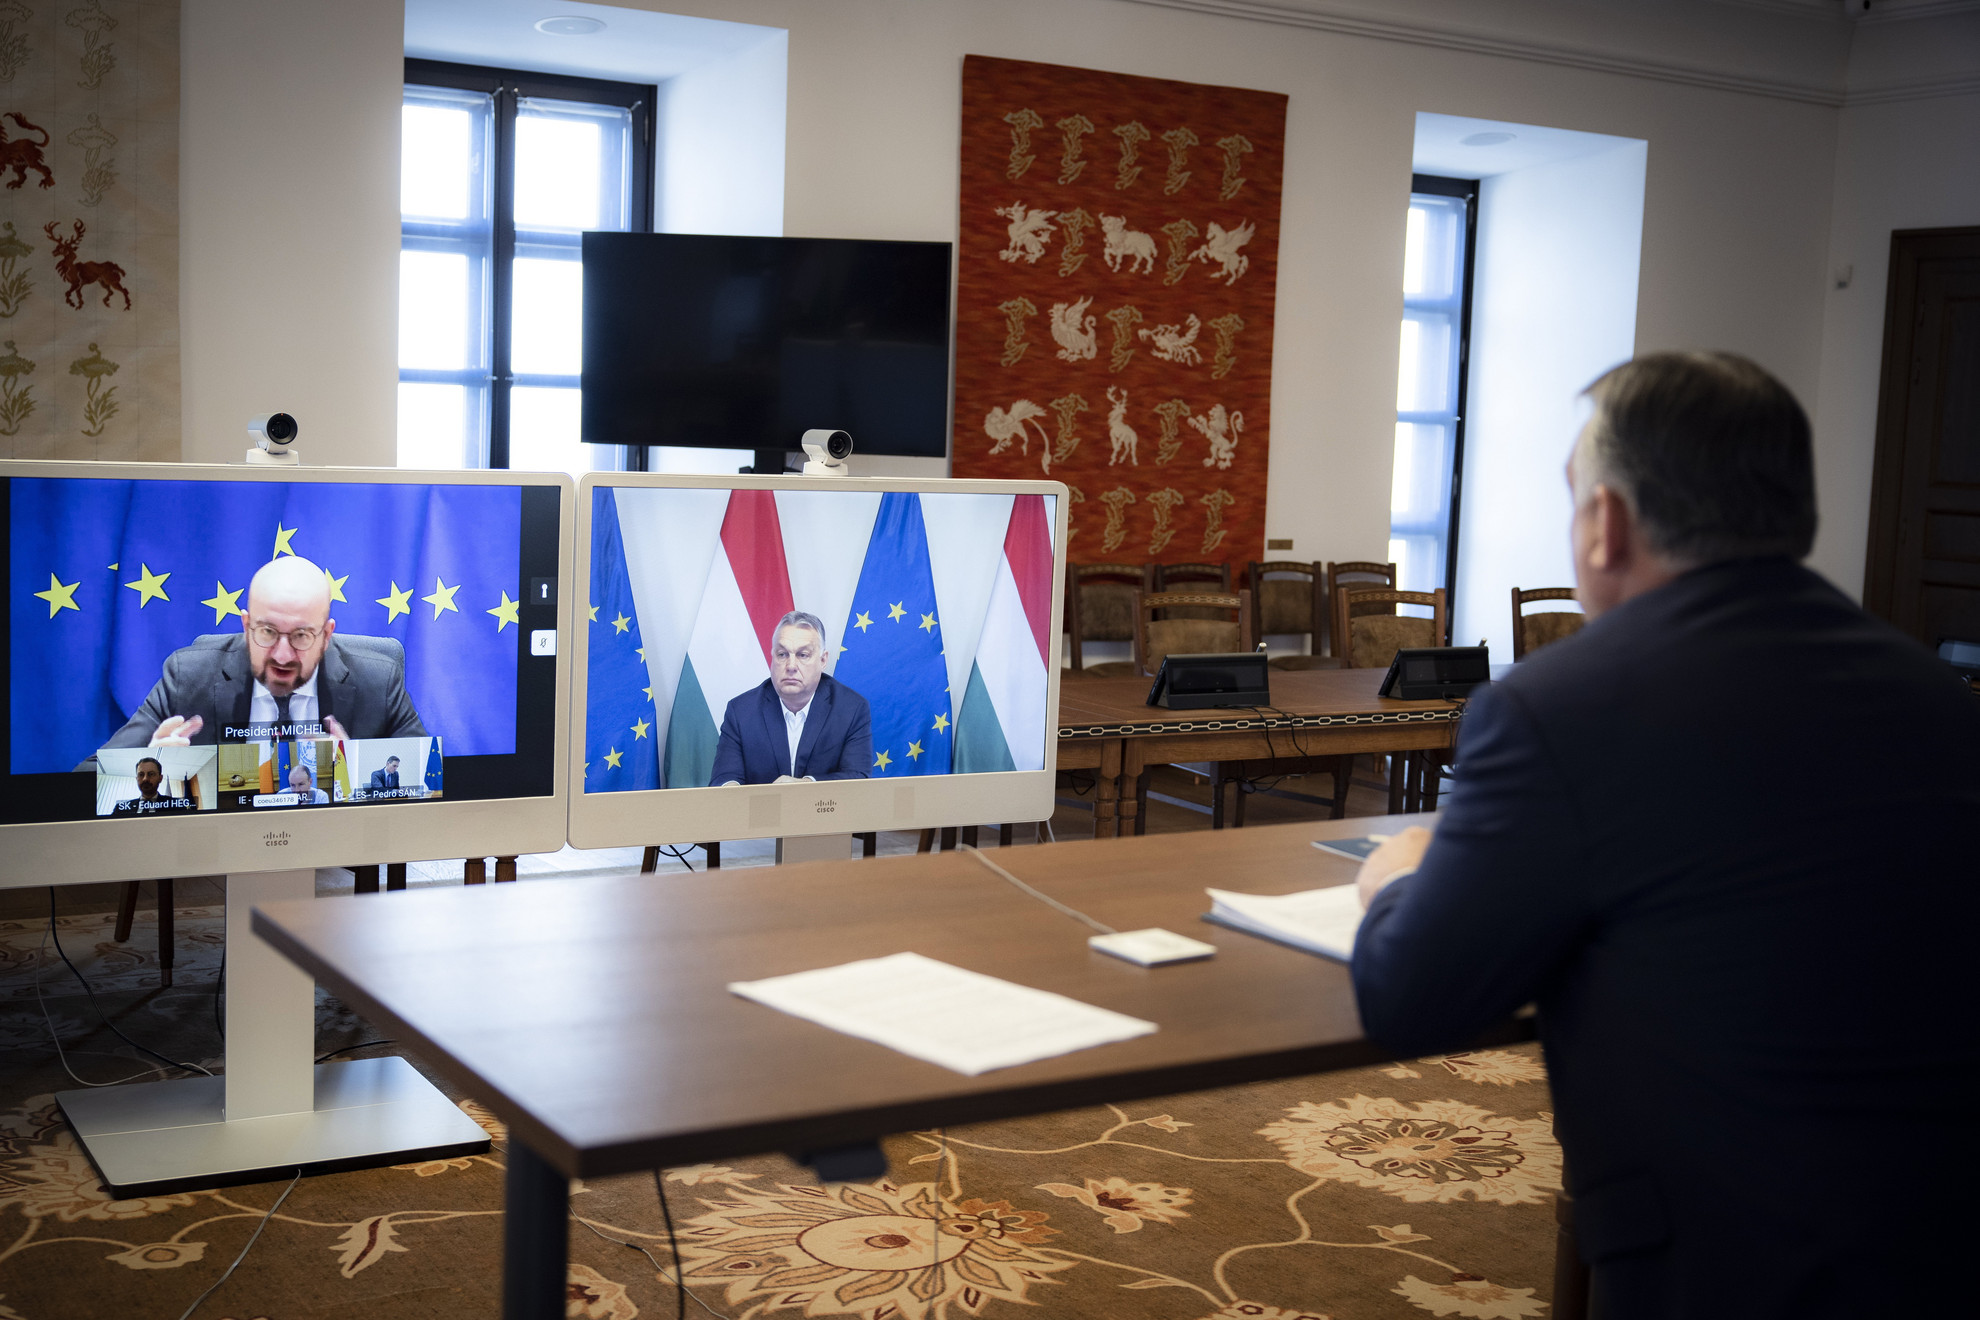 A Miniszterelnöki Sajtóiroda által közreadott képen Orbán Viktor miniszterelnök a másnapi franciaországi rendkívüli EU-csúcs előkészítéseként videókonferencia keretében egyeztet Charles Michellel, az Európai Tanács elnökével, valamint Szlovákia, Írország és Spanyolország miniszterelnökével a Karmelita kolostorban